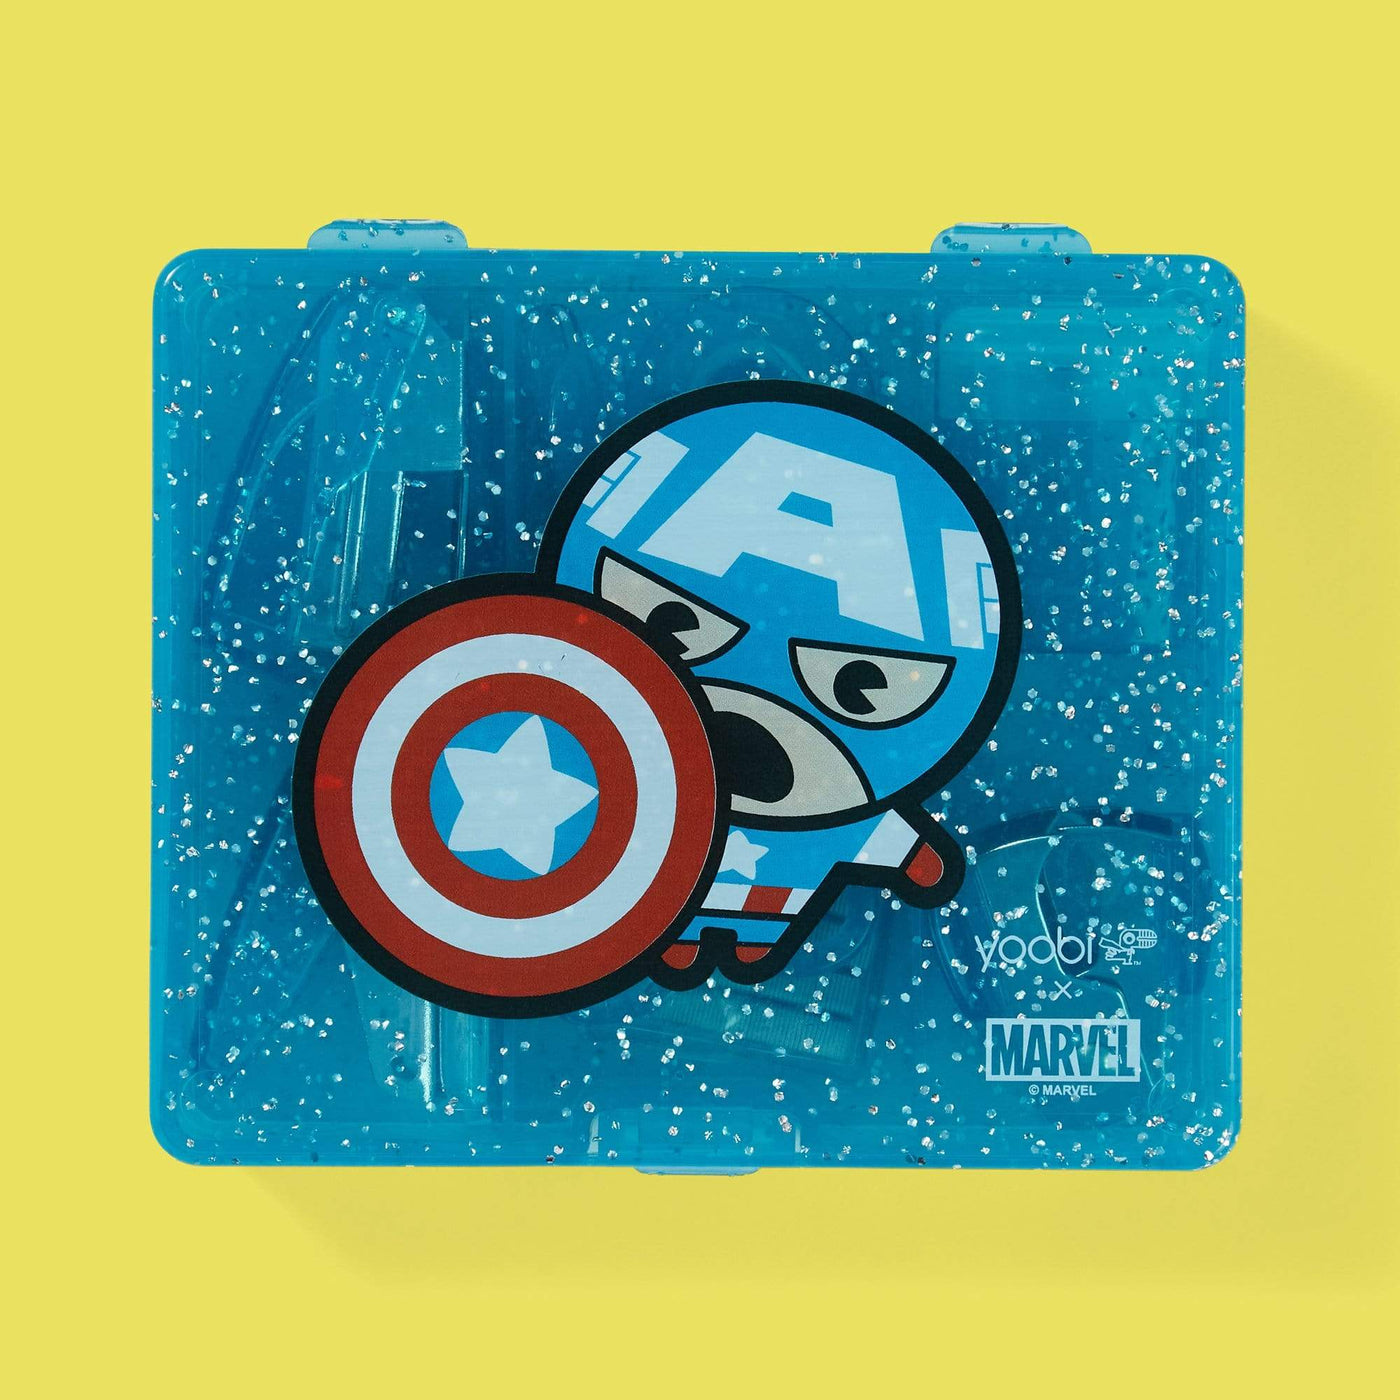 Marvel Captain America Shield Water Bottle Blue